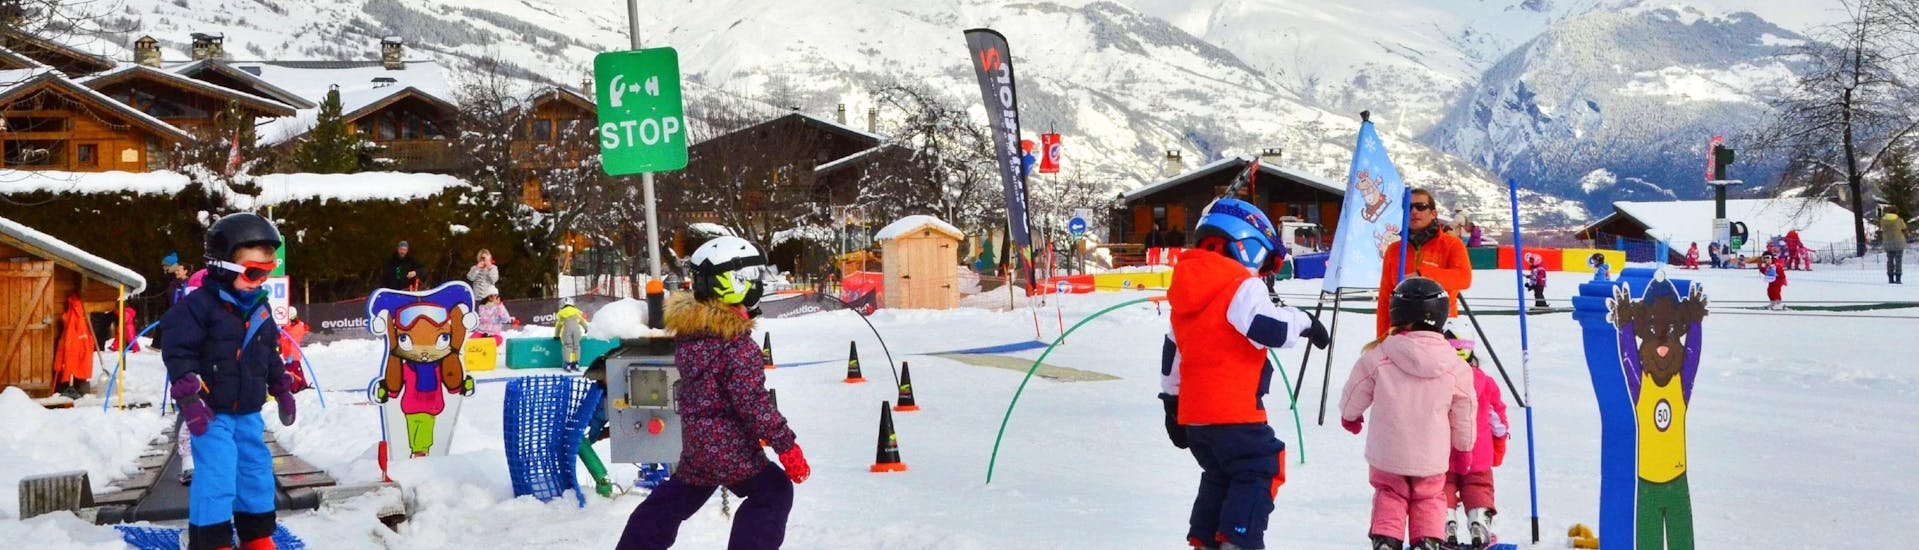 Les enfants apprennent à skier avec des jeux pendant leur Cours de ski Enfants (4-12 ans) pour Débutants avec l'école de ski Evolution 2 La Plagne Montchavin - Les Coches.